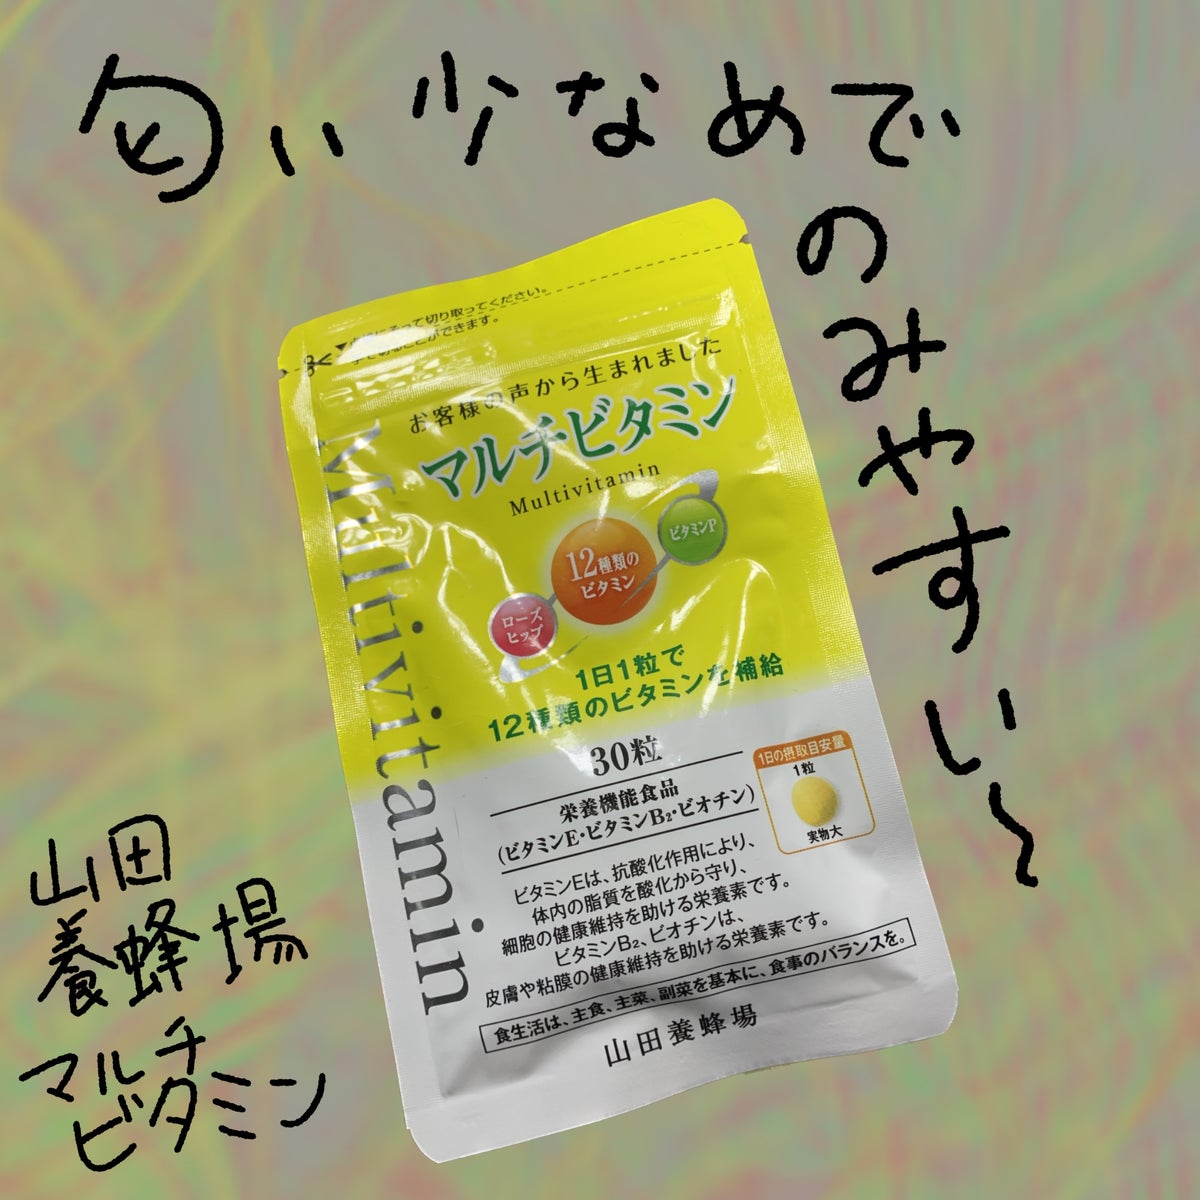 マルチビタミン Multi Vitamin/山田養蜂場（健康食品）/健康サプリメント by あちゃひこ